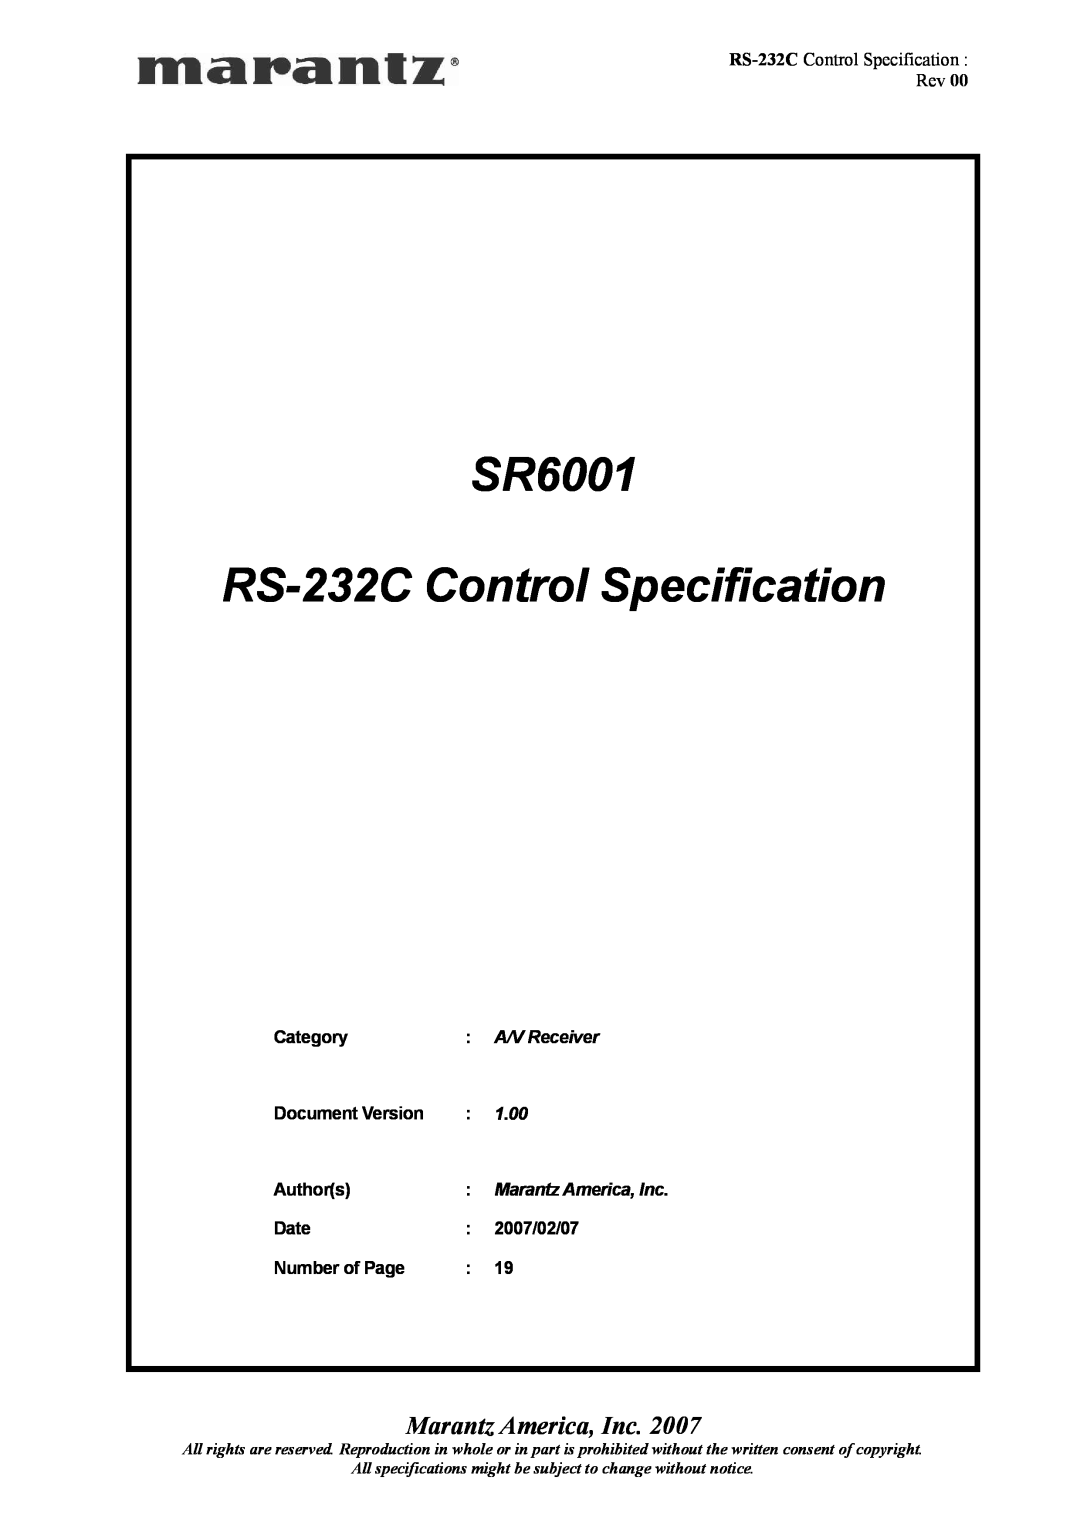 Marantz manual Model SR6001 User Guide, AV Surround Receiver 